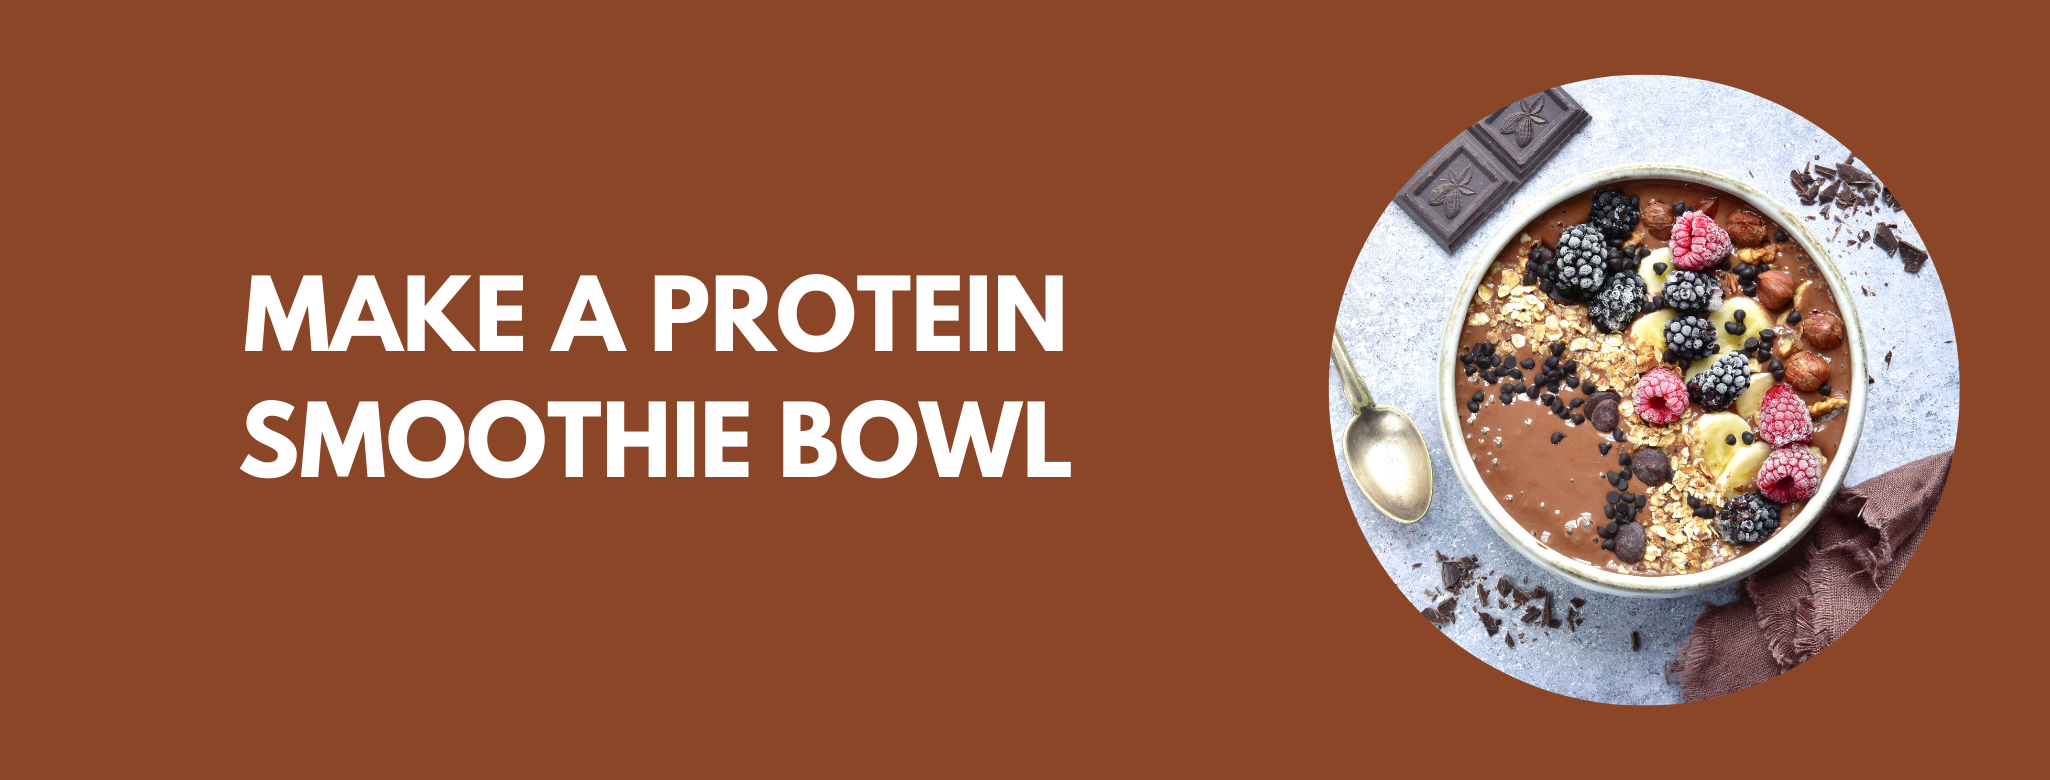 that protein smoothie bowl recipie